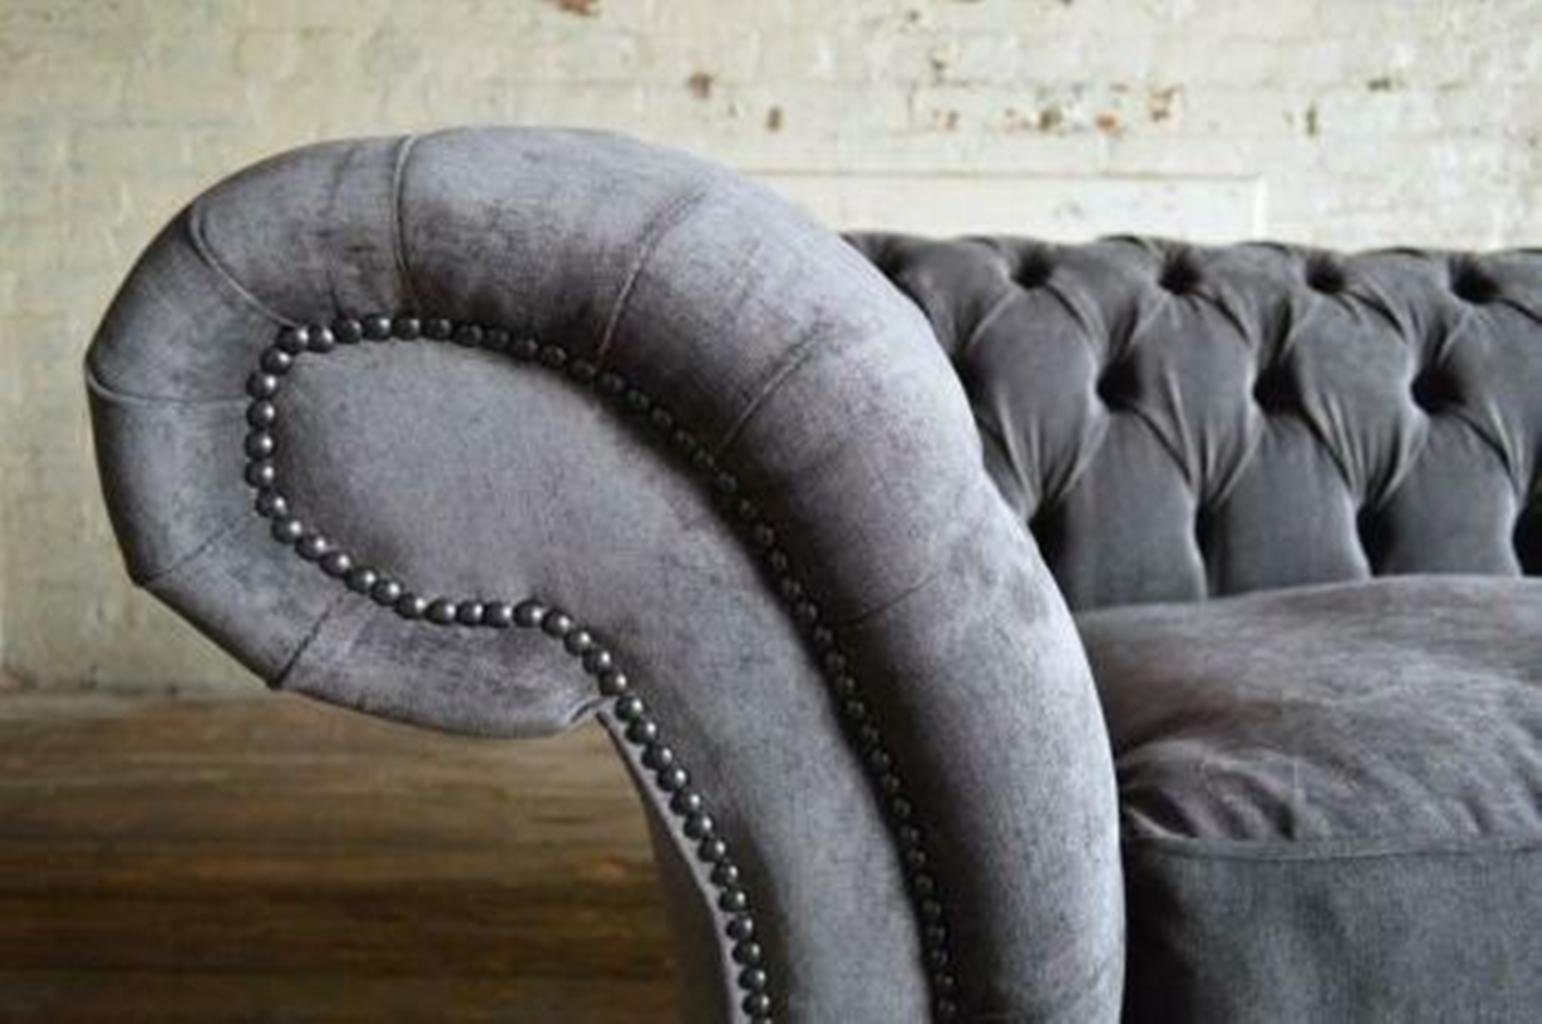 Polstermöbel Grauer Luxus Chesterfield Made Couch Chesterfield-Sofa Neu, JVmoebel in Dreisitzer Europe Design